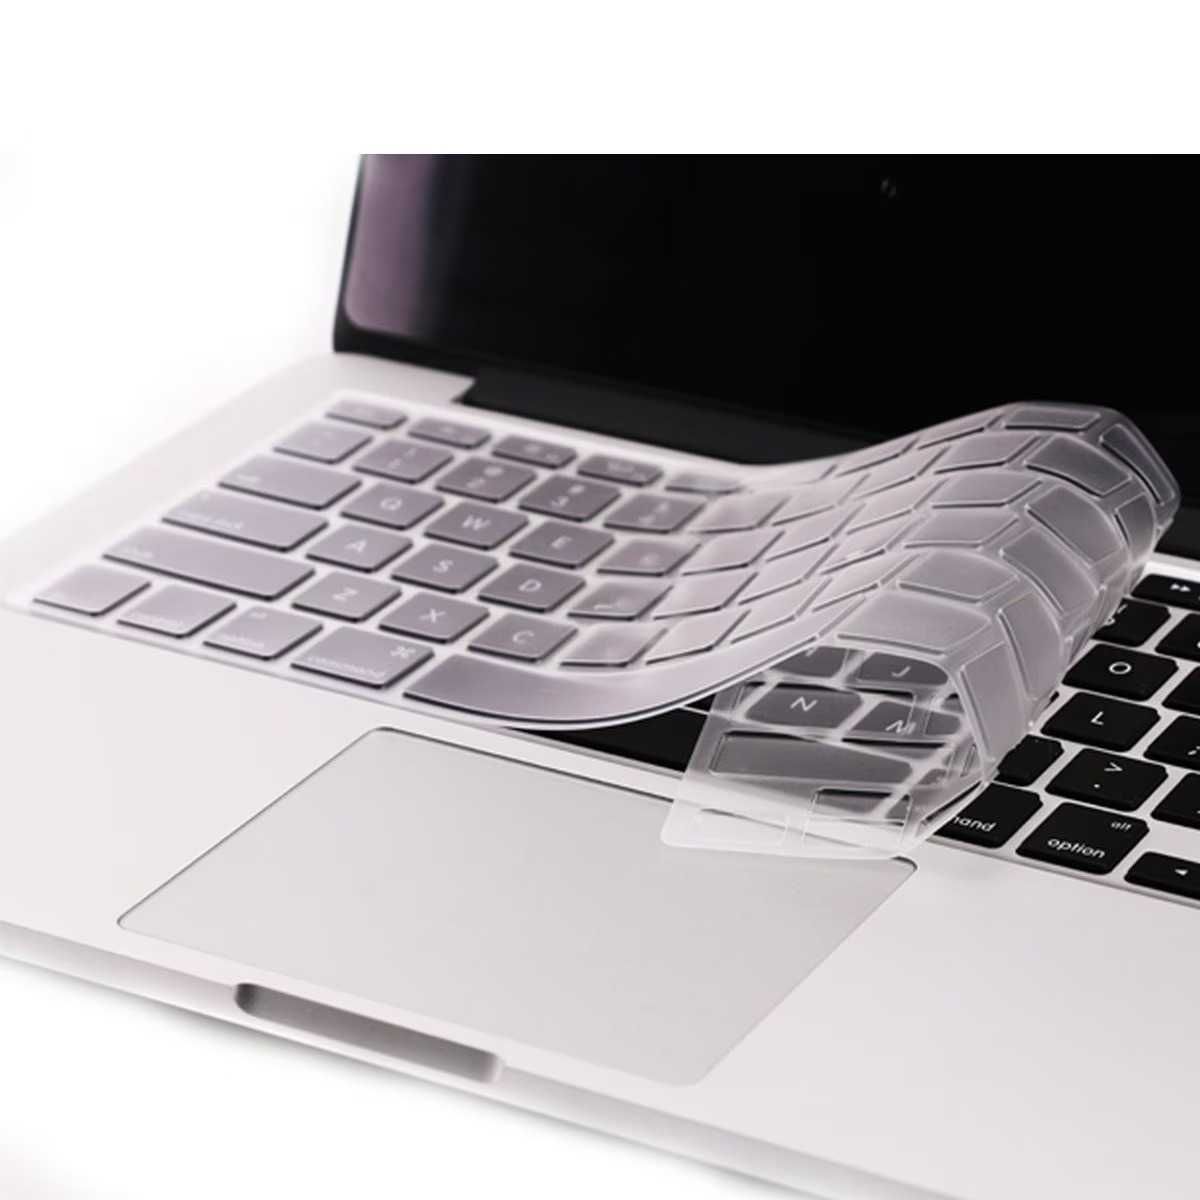 NOU Protectie Tastatura EU US MacBook Air Pro Retina 13 15 17